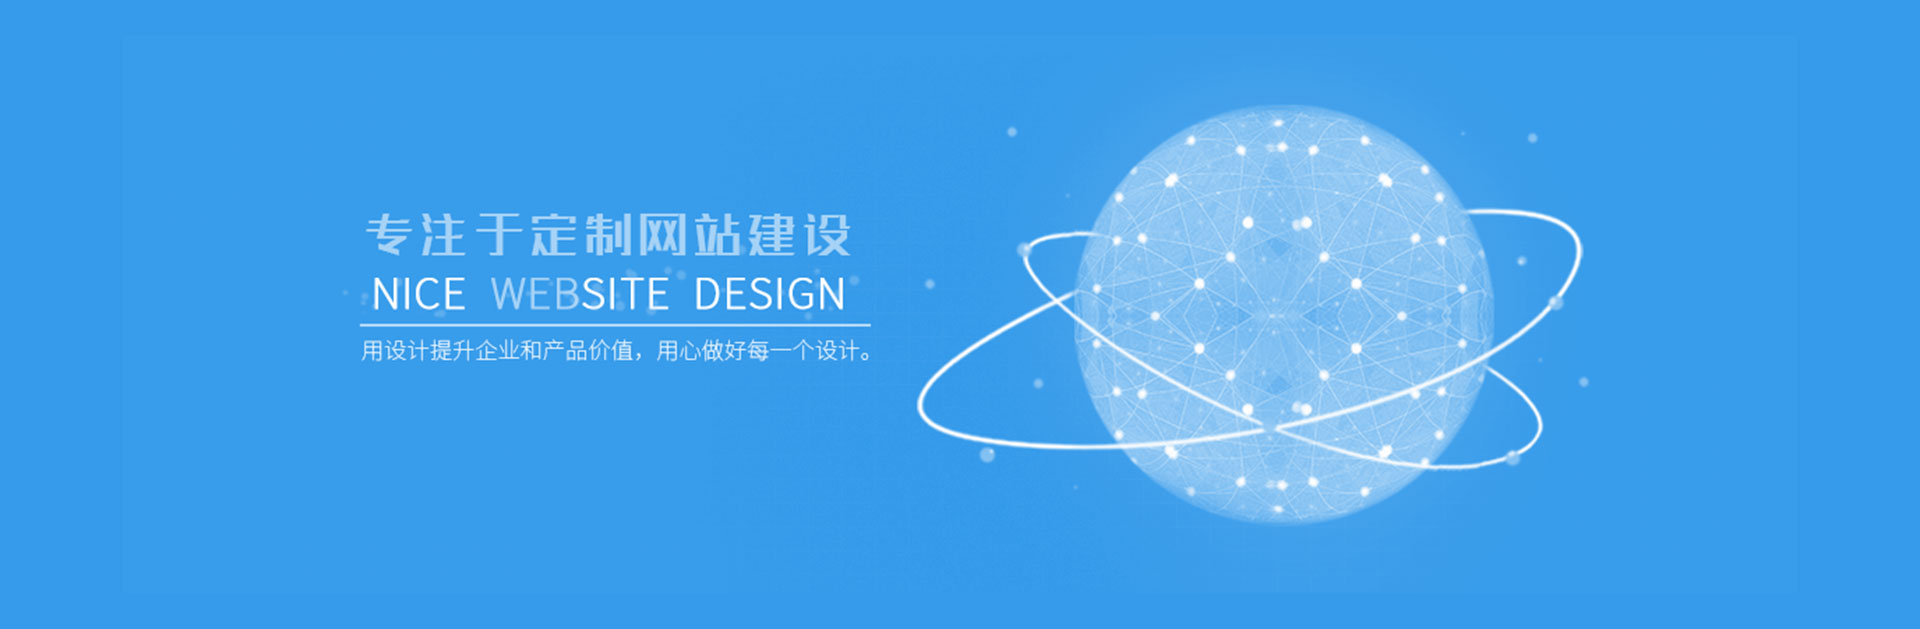 深圳網站建設_網頁設計制作_網站策劃設計_做網站公司--開心投資